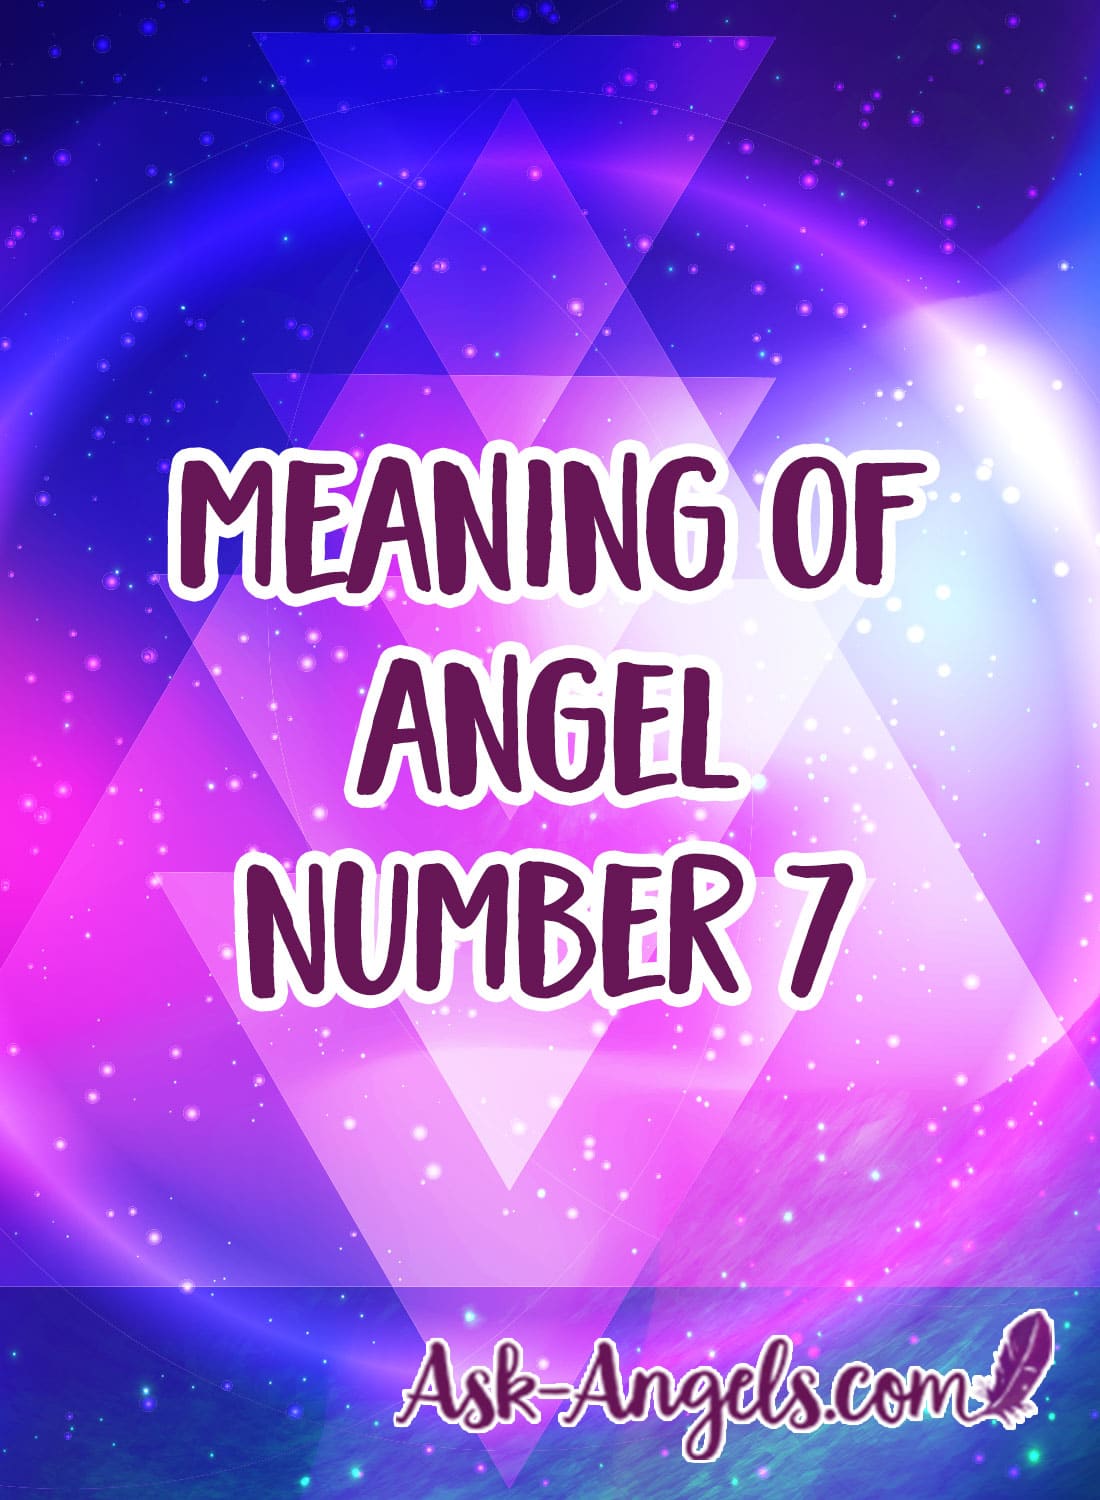 betydning av engel nummer 7 